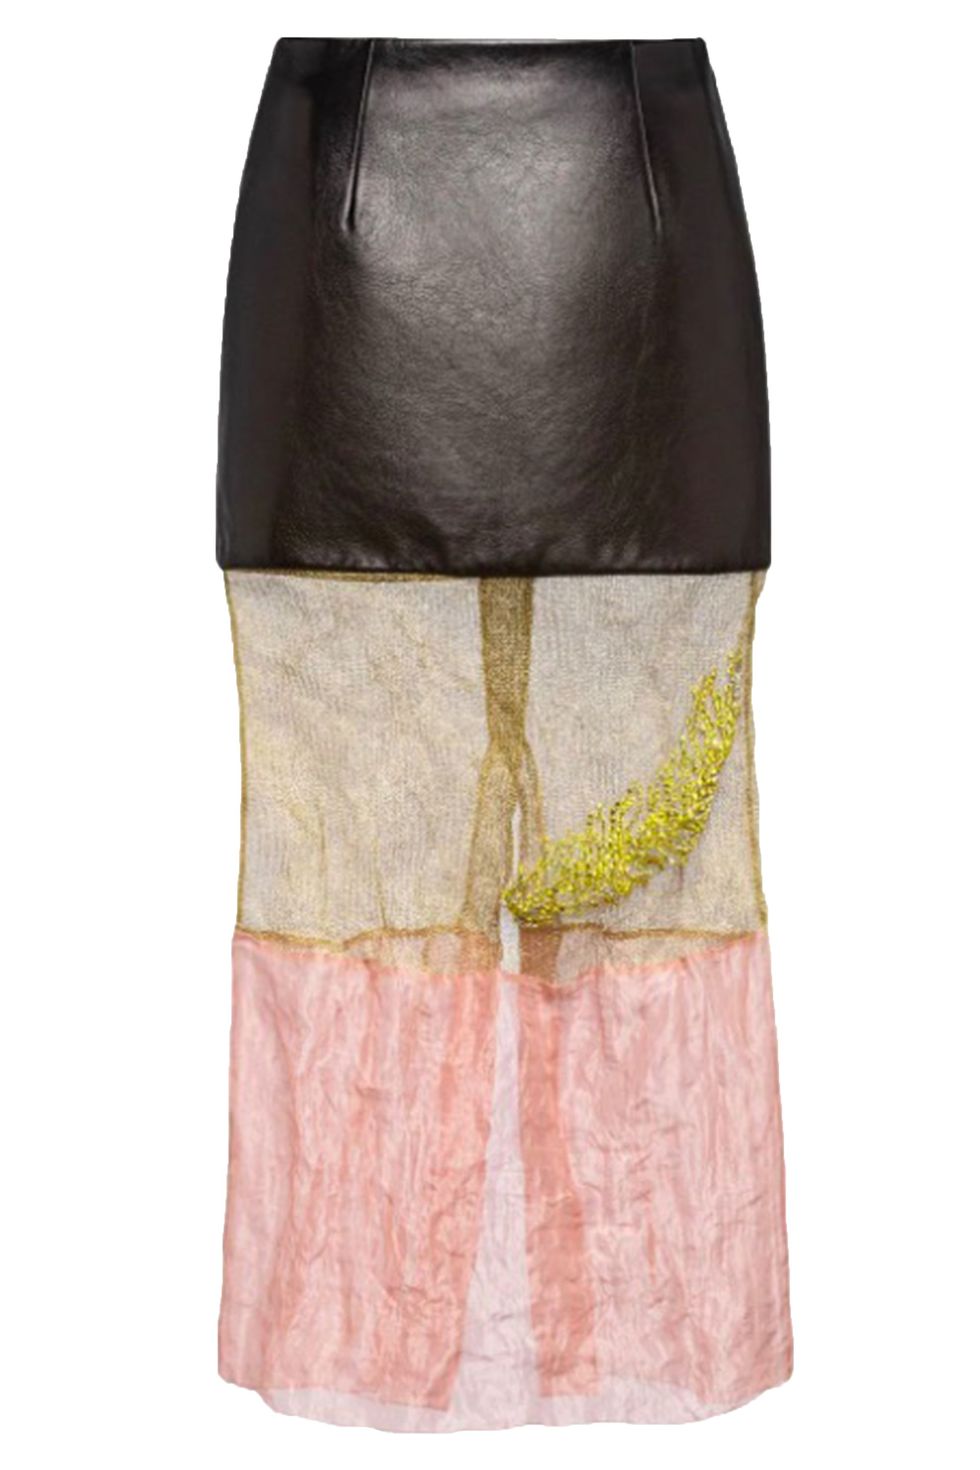 Prada multi-coloured sheer skirt